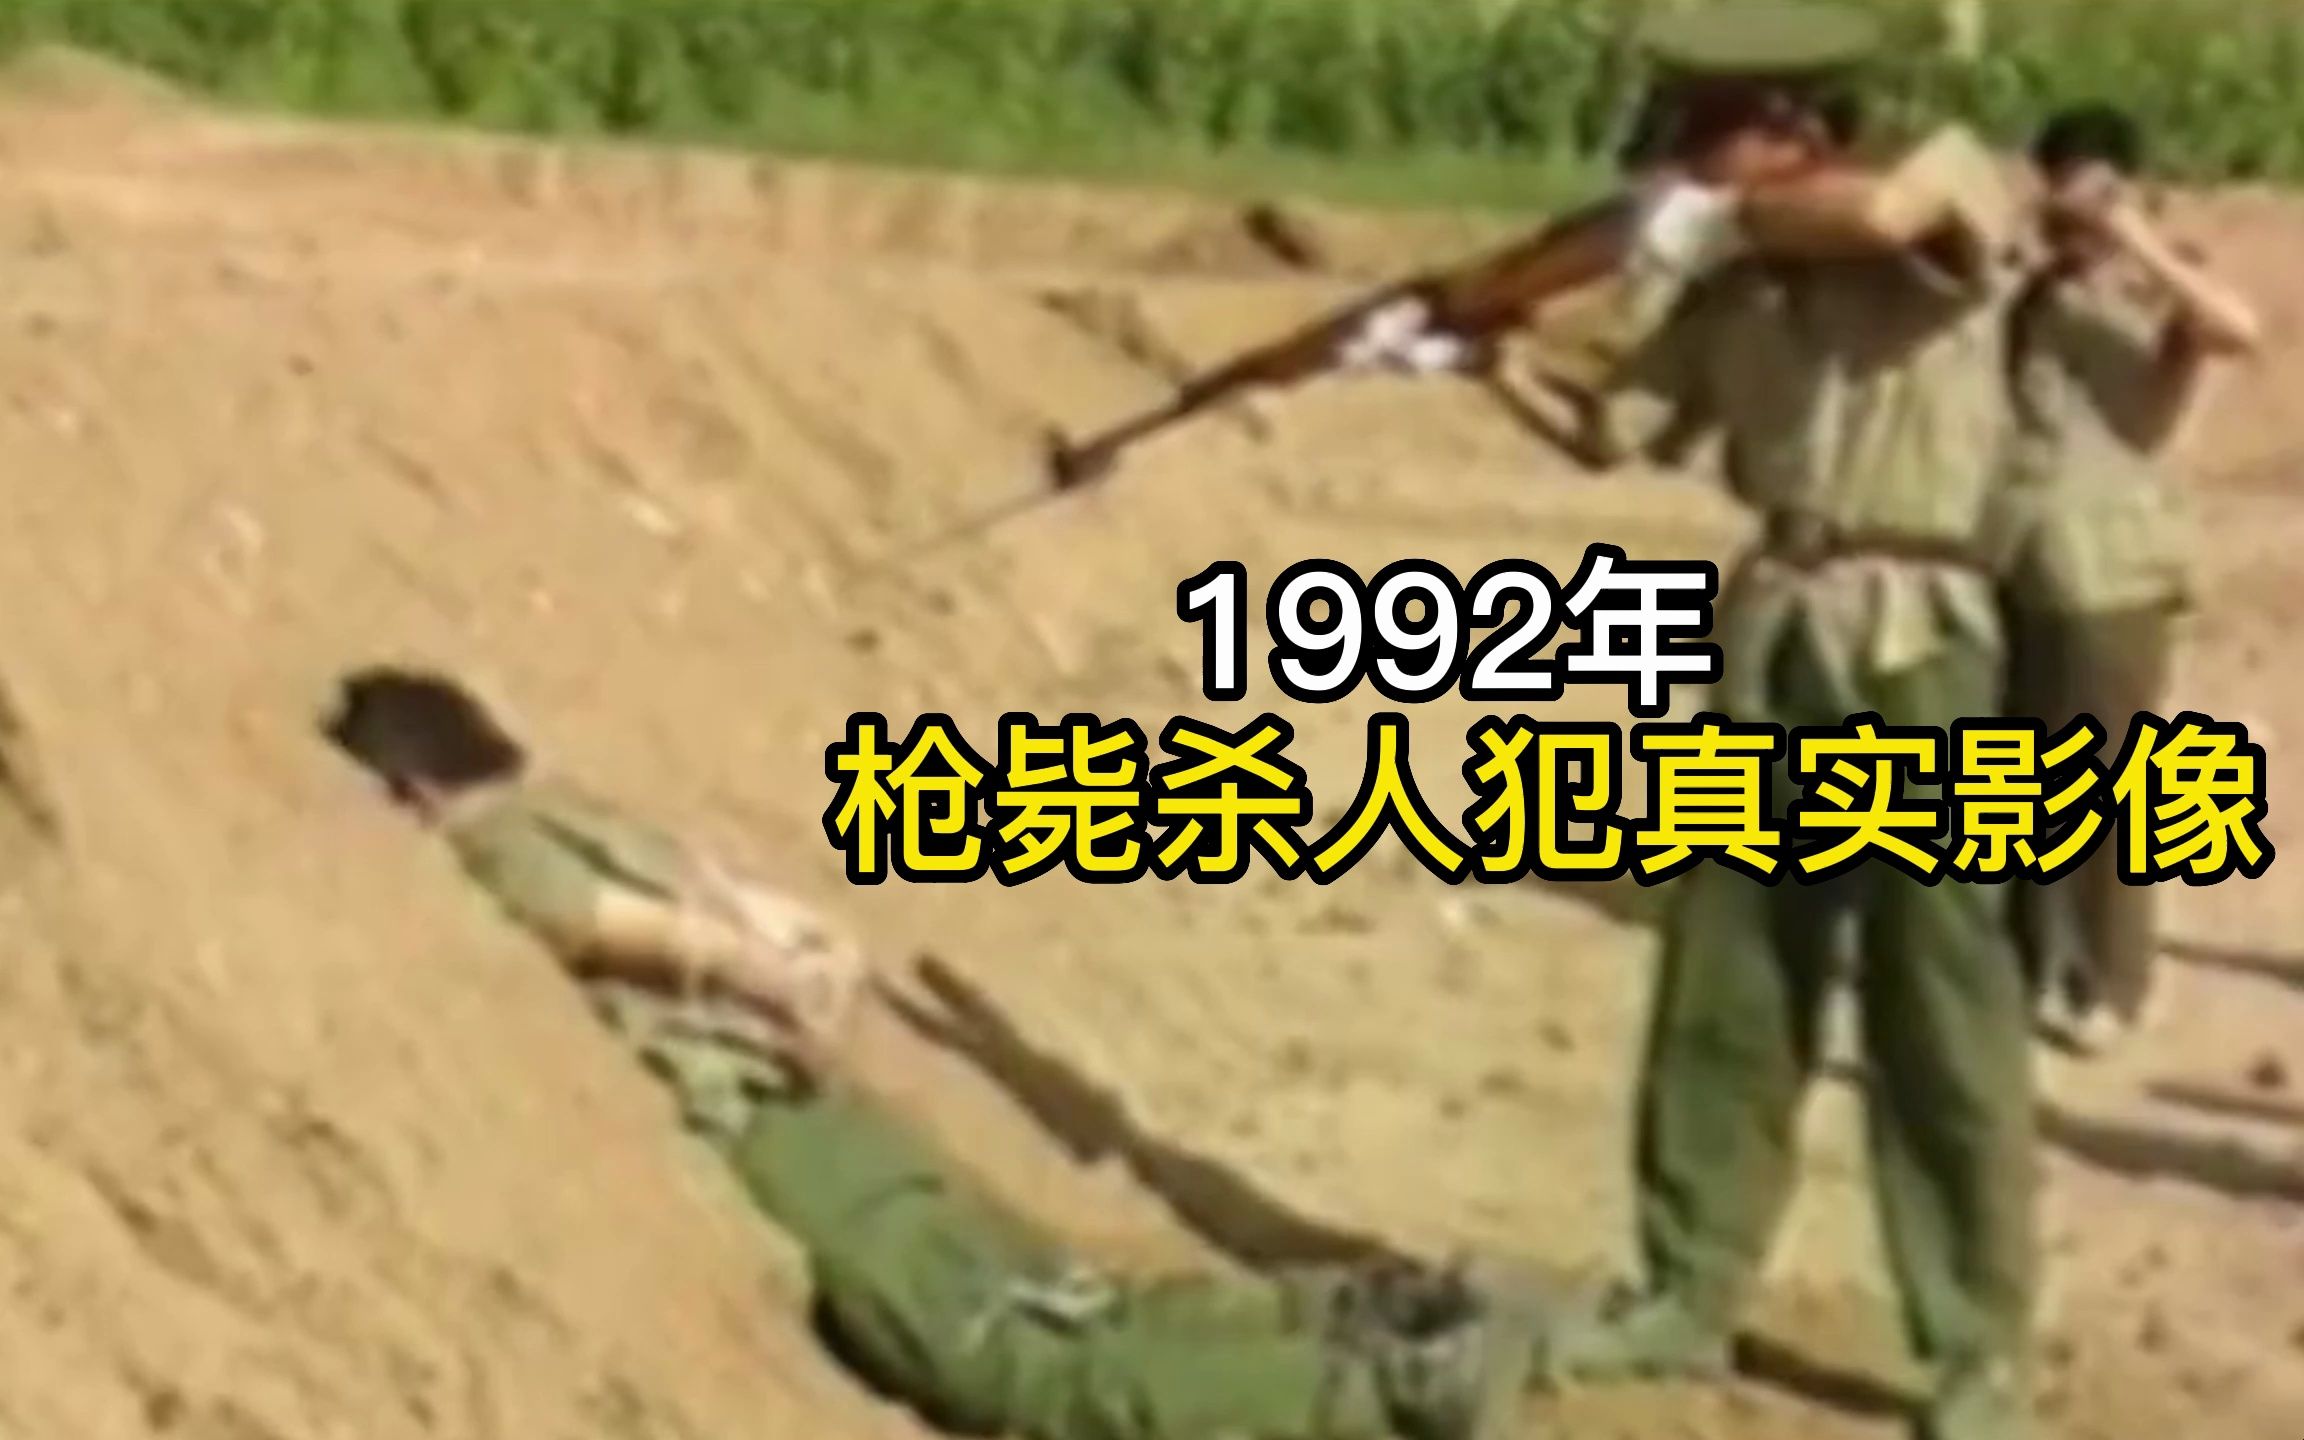 1992年，枪毙杀人犯张洪旗真实影像，刑场上一枪毙命